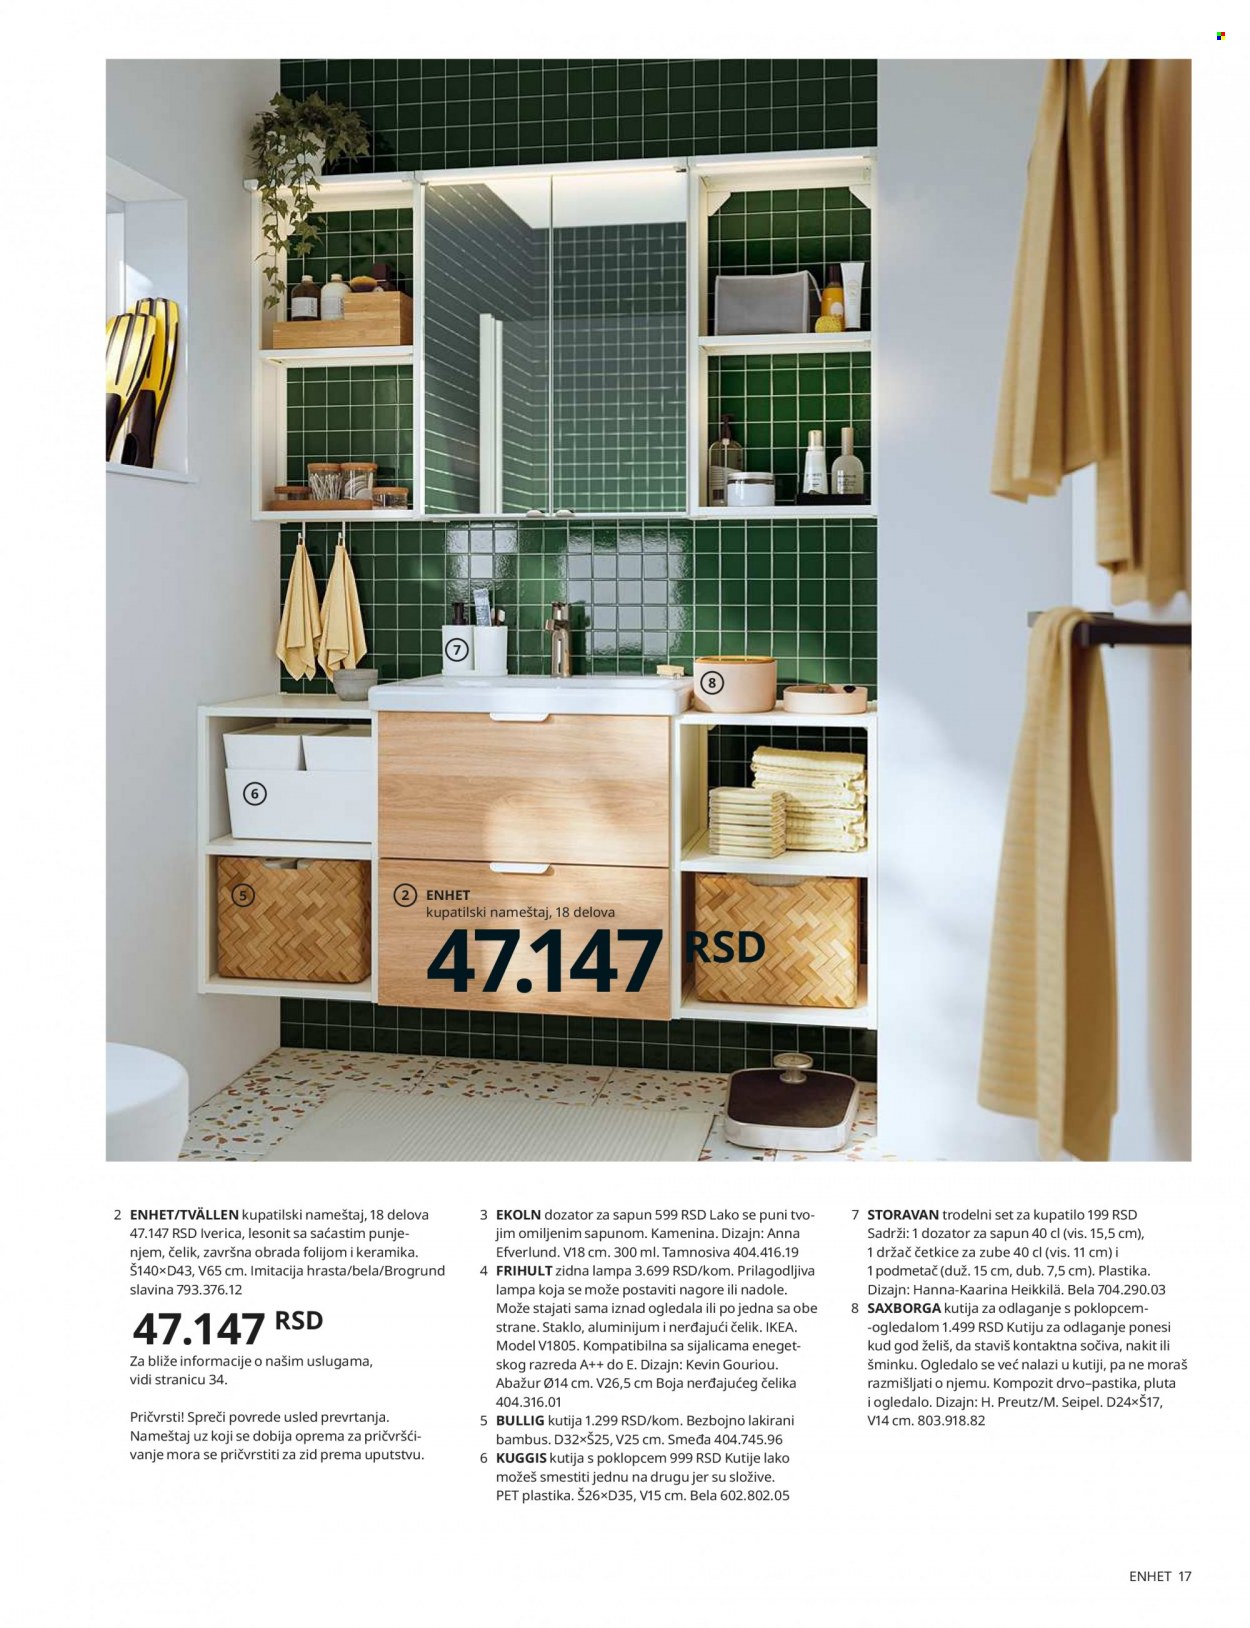 thumbnail - IKEA katalog - Proizvodi na akciji - ogledalo, dozer tečnog sapuna, četkica, podmetač, slavina, lampa, zidna lampa. Stranica 17.